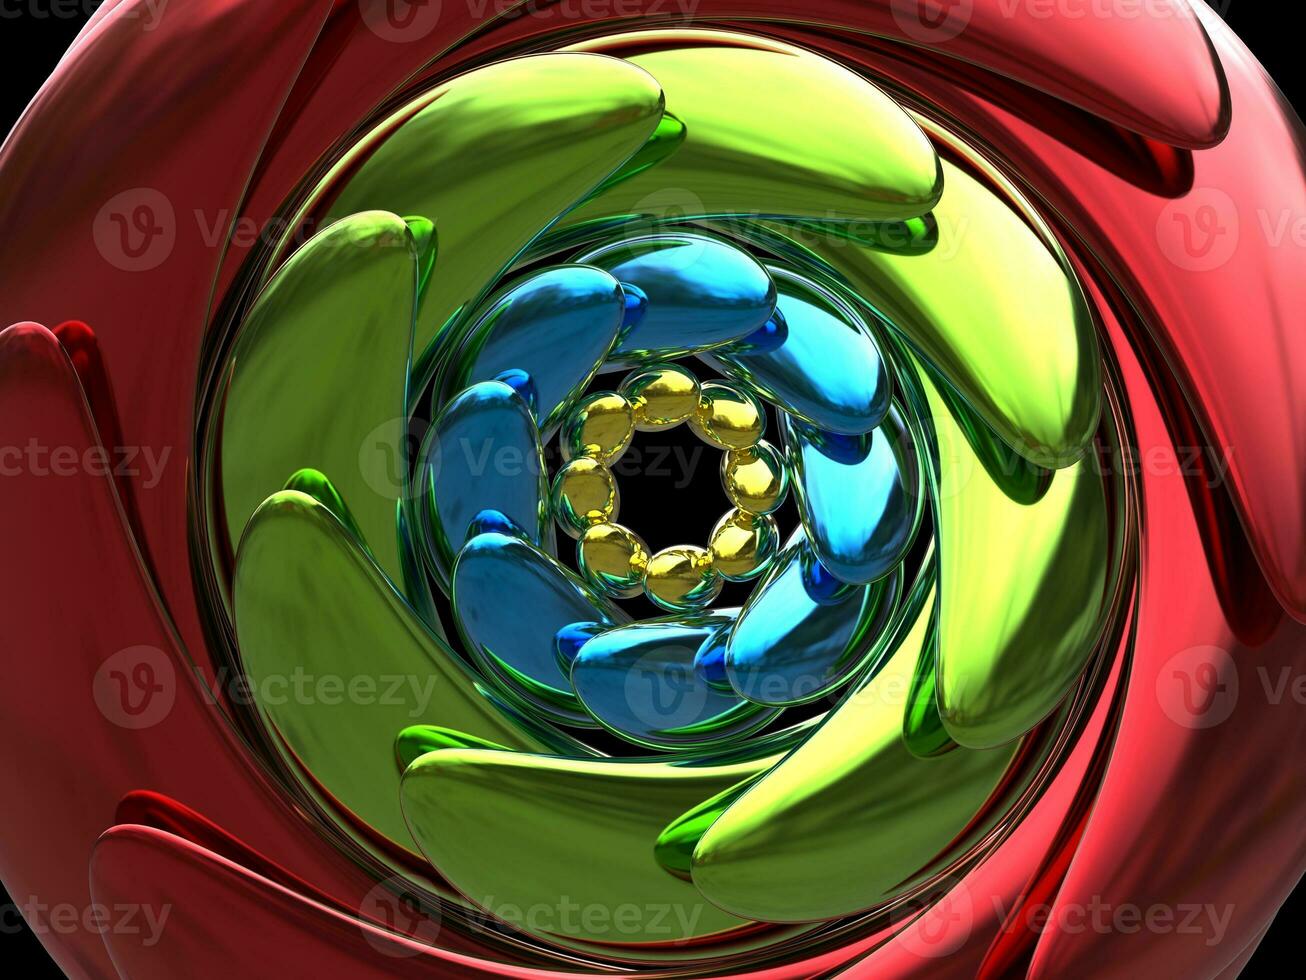 metallisk cirkulär abstrakt design i röd, grön, blå och gul - närbild skott foto